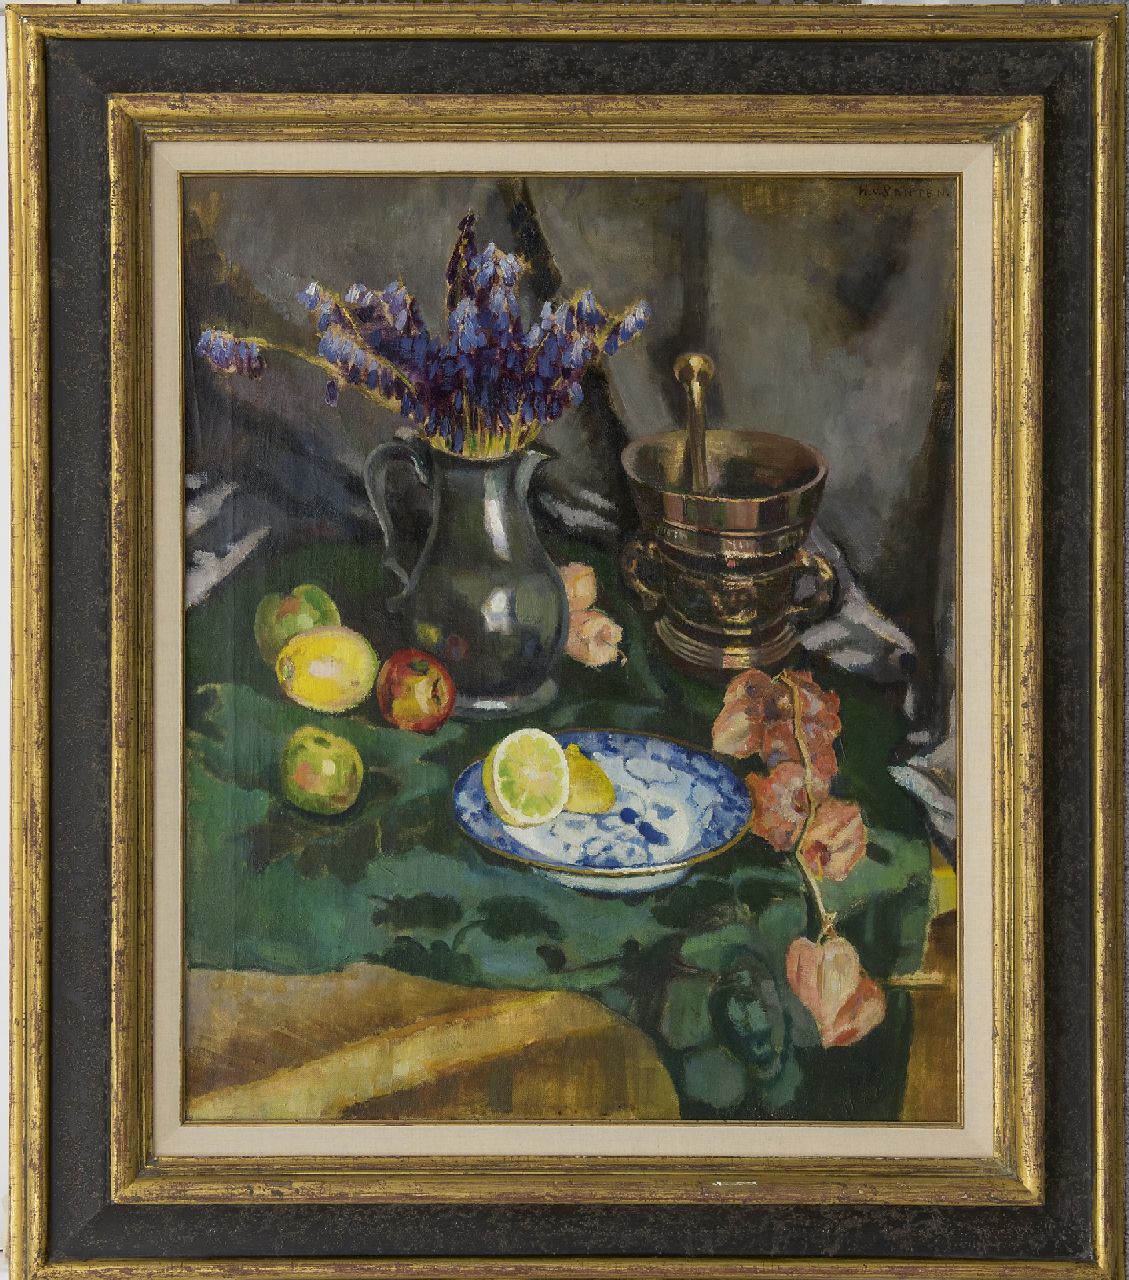 Santen A.J. van | Anna Jacoba 'Hans' van Santen, Stilleven met bloemen, citroen en vijzel, olieverf op doek 62,0 x 75,0 cm, gesigneerd rechtsboven